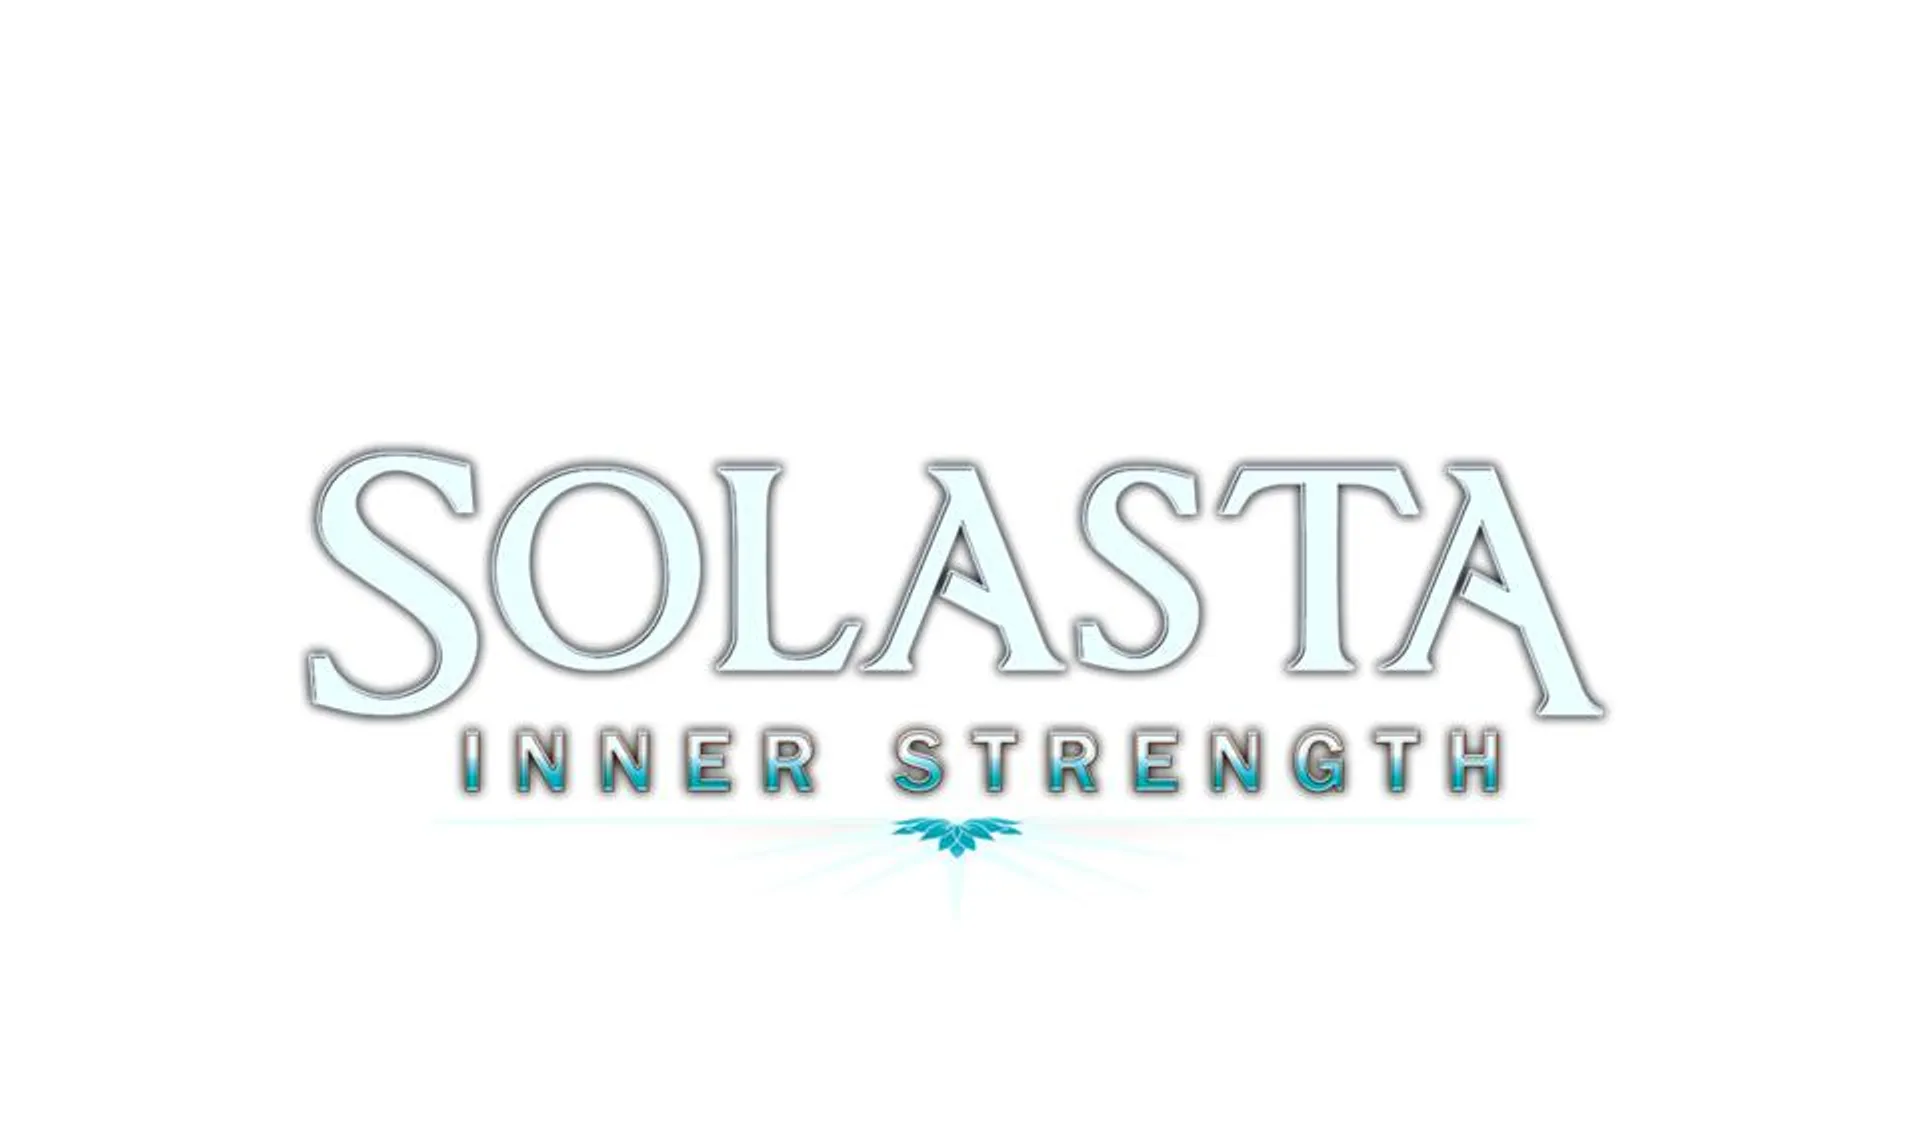 Solasta: Crown of the Magister - Inner Strength